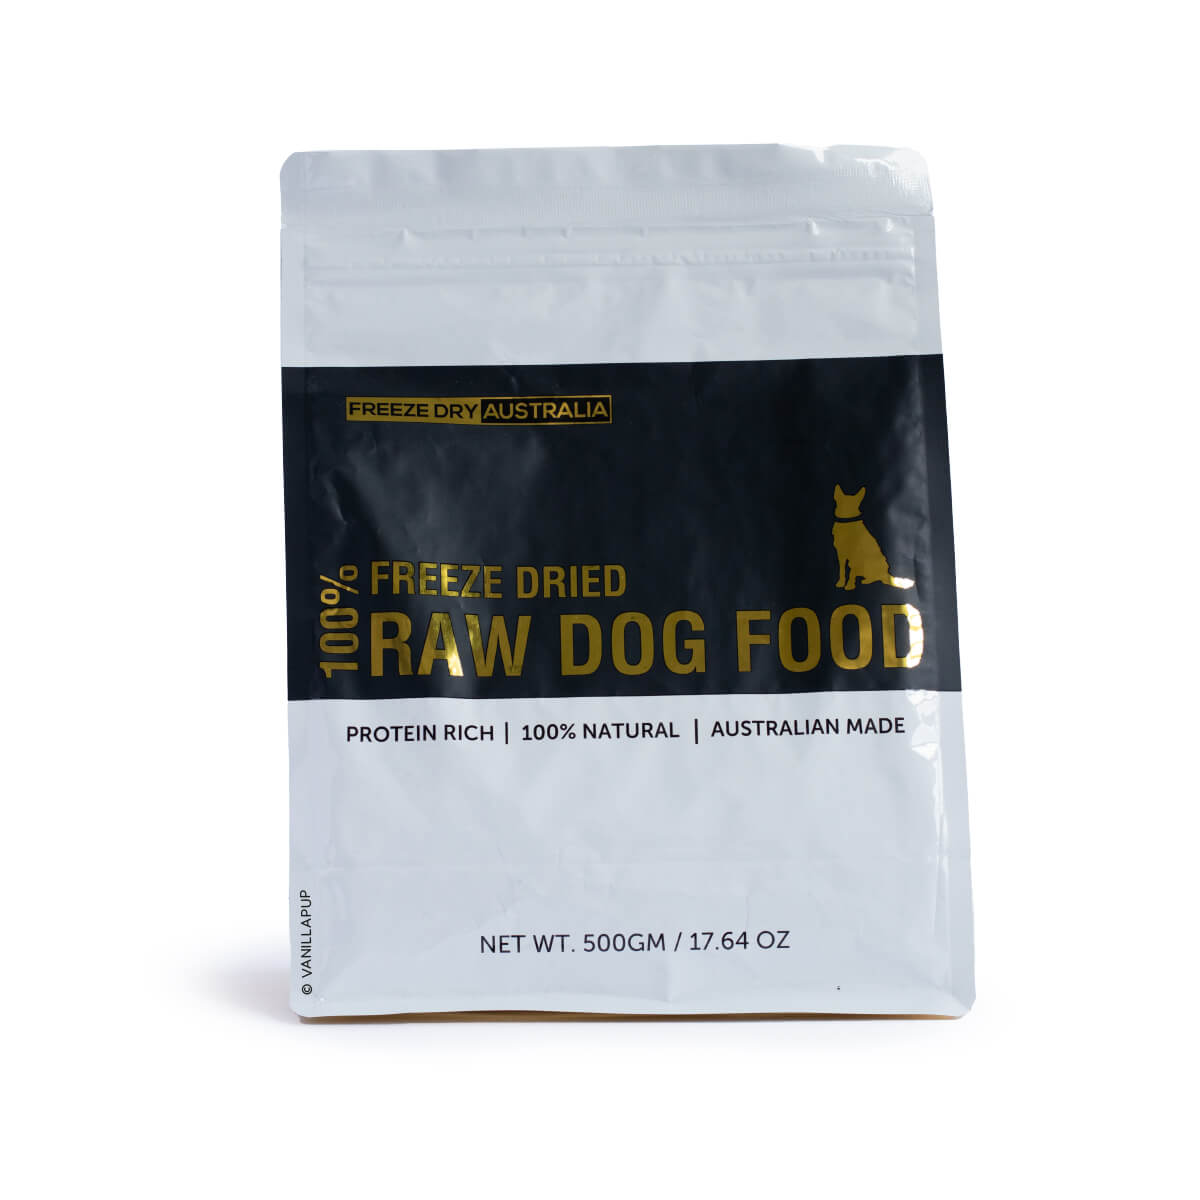 Freeze Dry Australia Raw Dog Food 500g